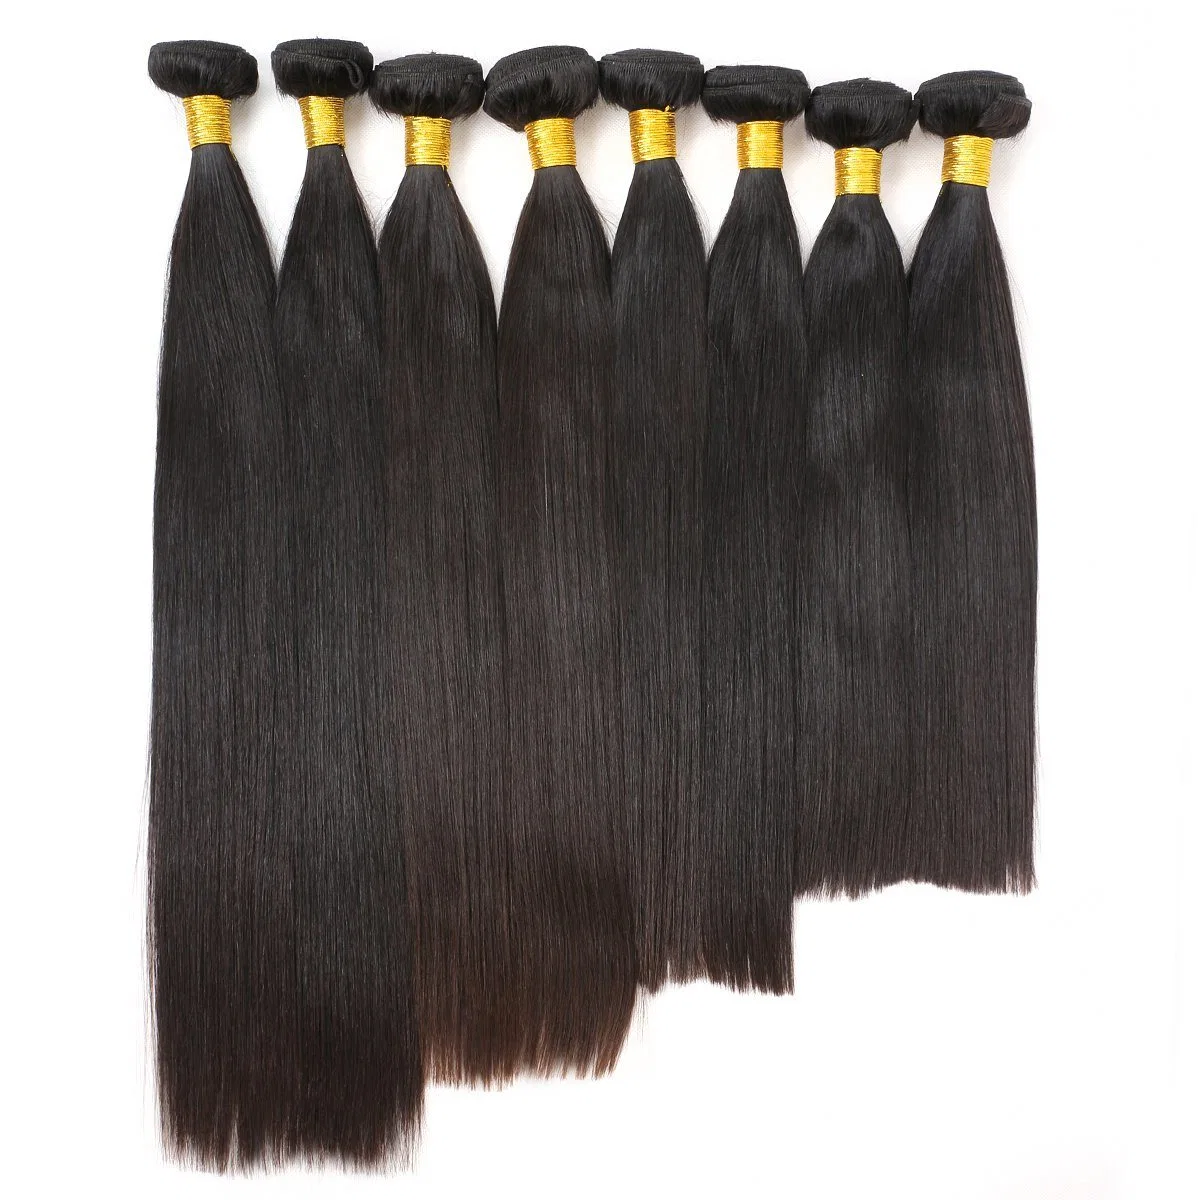 الجمال على الخط المستقيم الشعر البرازيلي اللون الأسود الطبيعي 100% من الشعر البشري حزم الشعر ريمي 8-28 بوصة